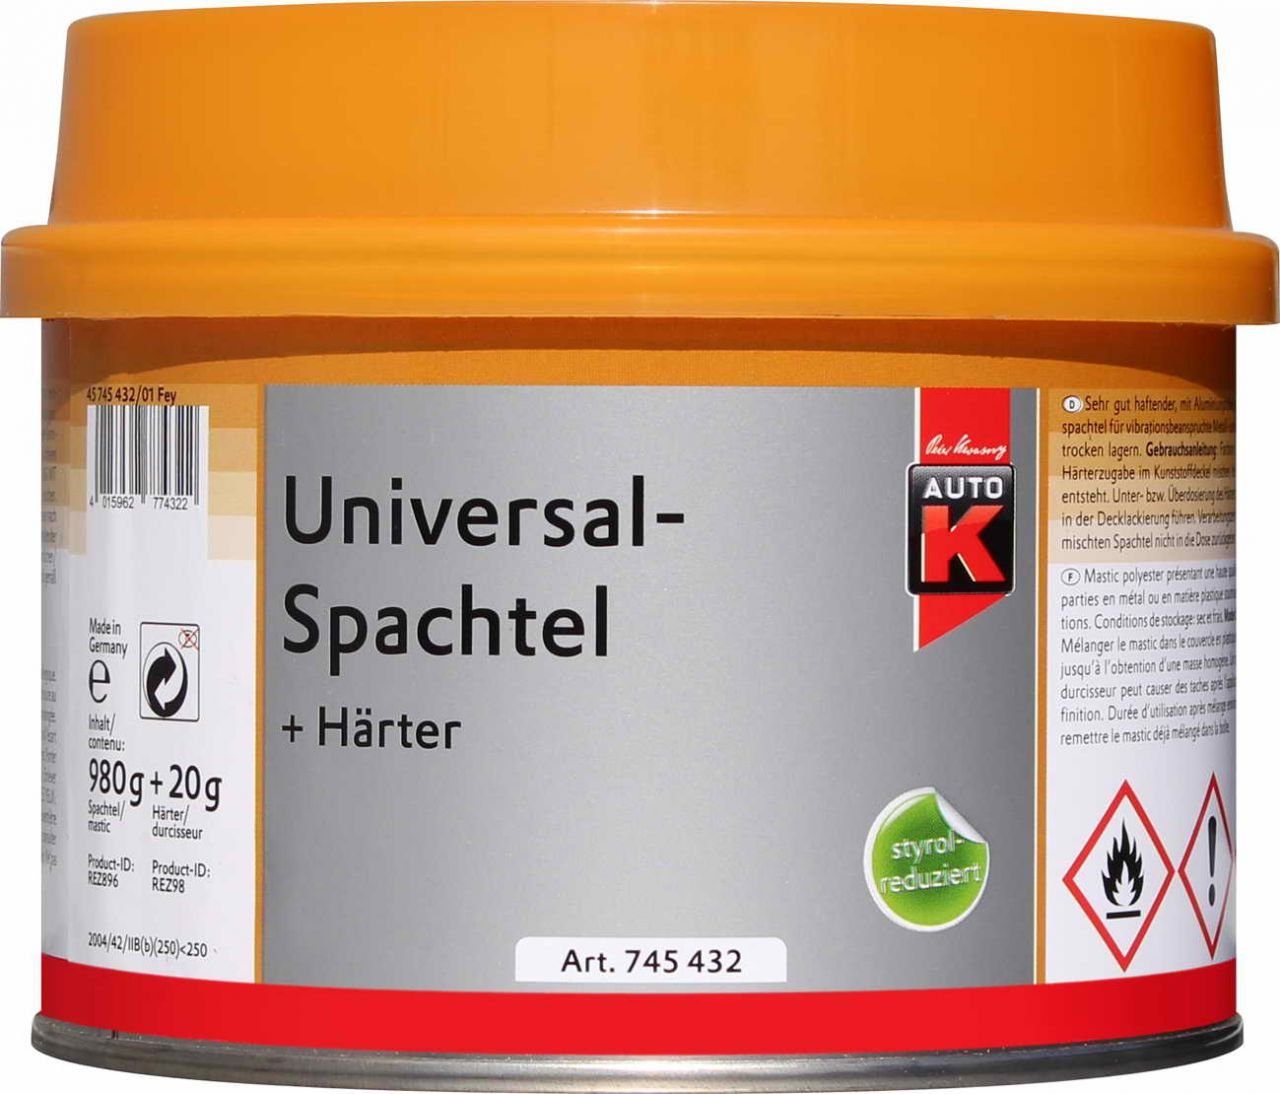 Auto-K Breitspachtel Universalspachtel + 1000g Auto-K Härter